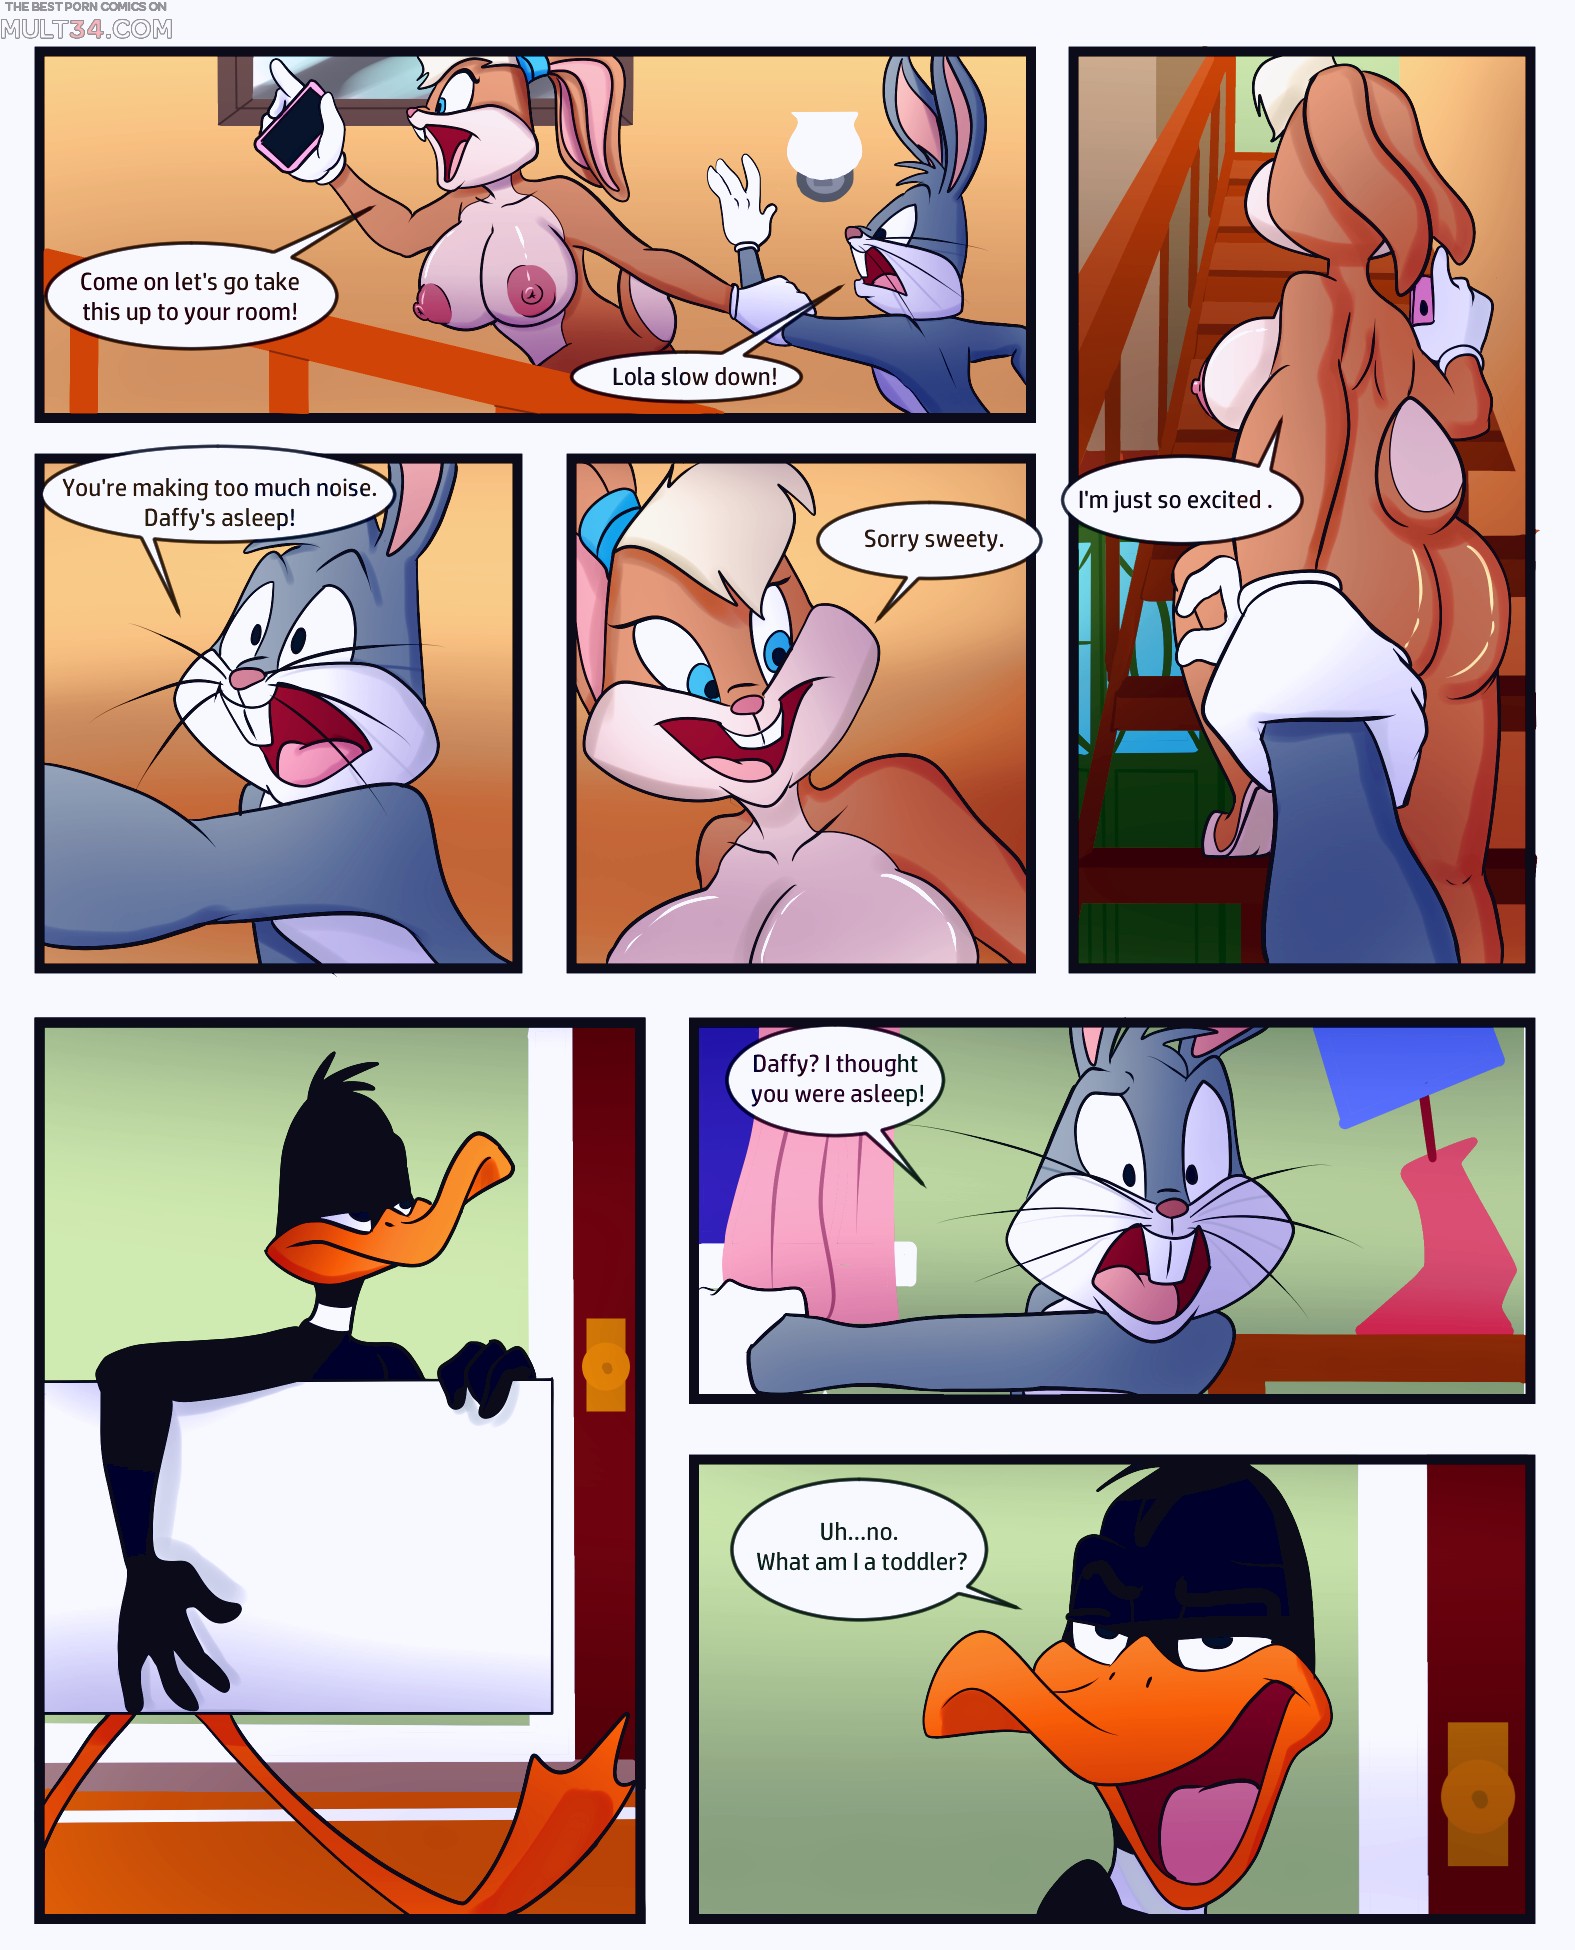 Cartoon Lola Bunny Porn Comic - Lolas Noods porn comic - the best cartoon porn comics, Rule 34 | MULT34